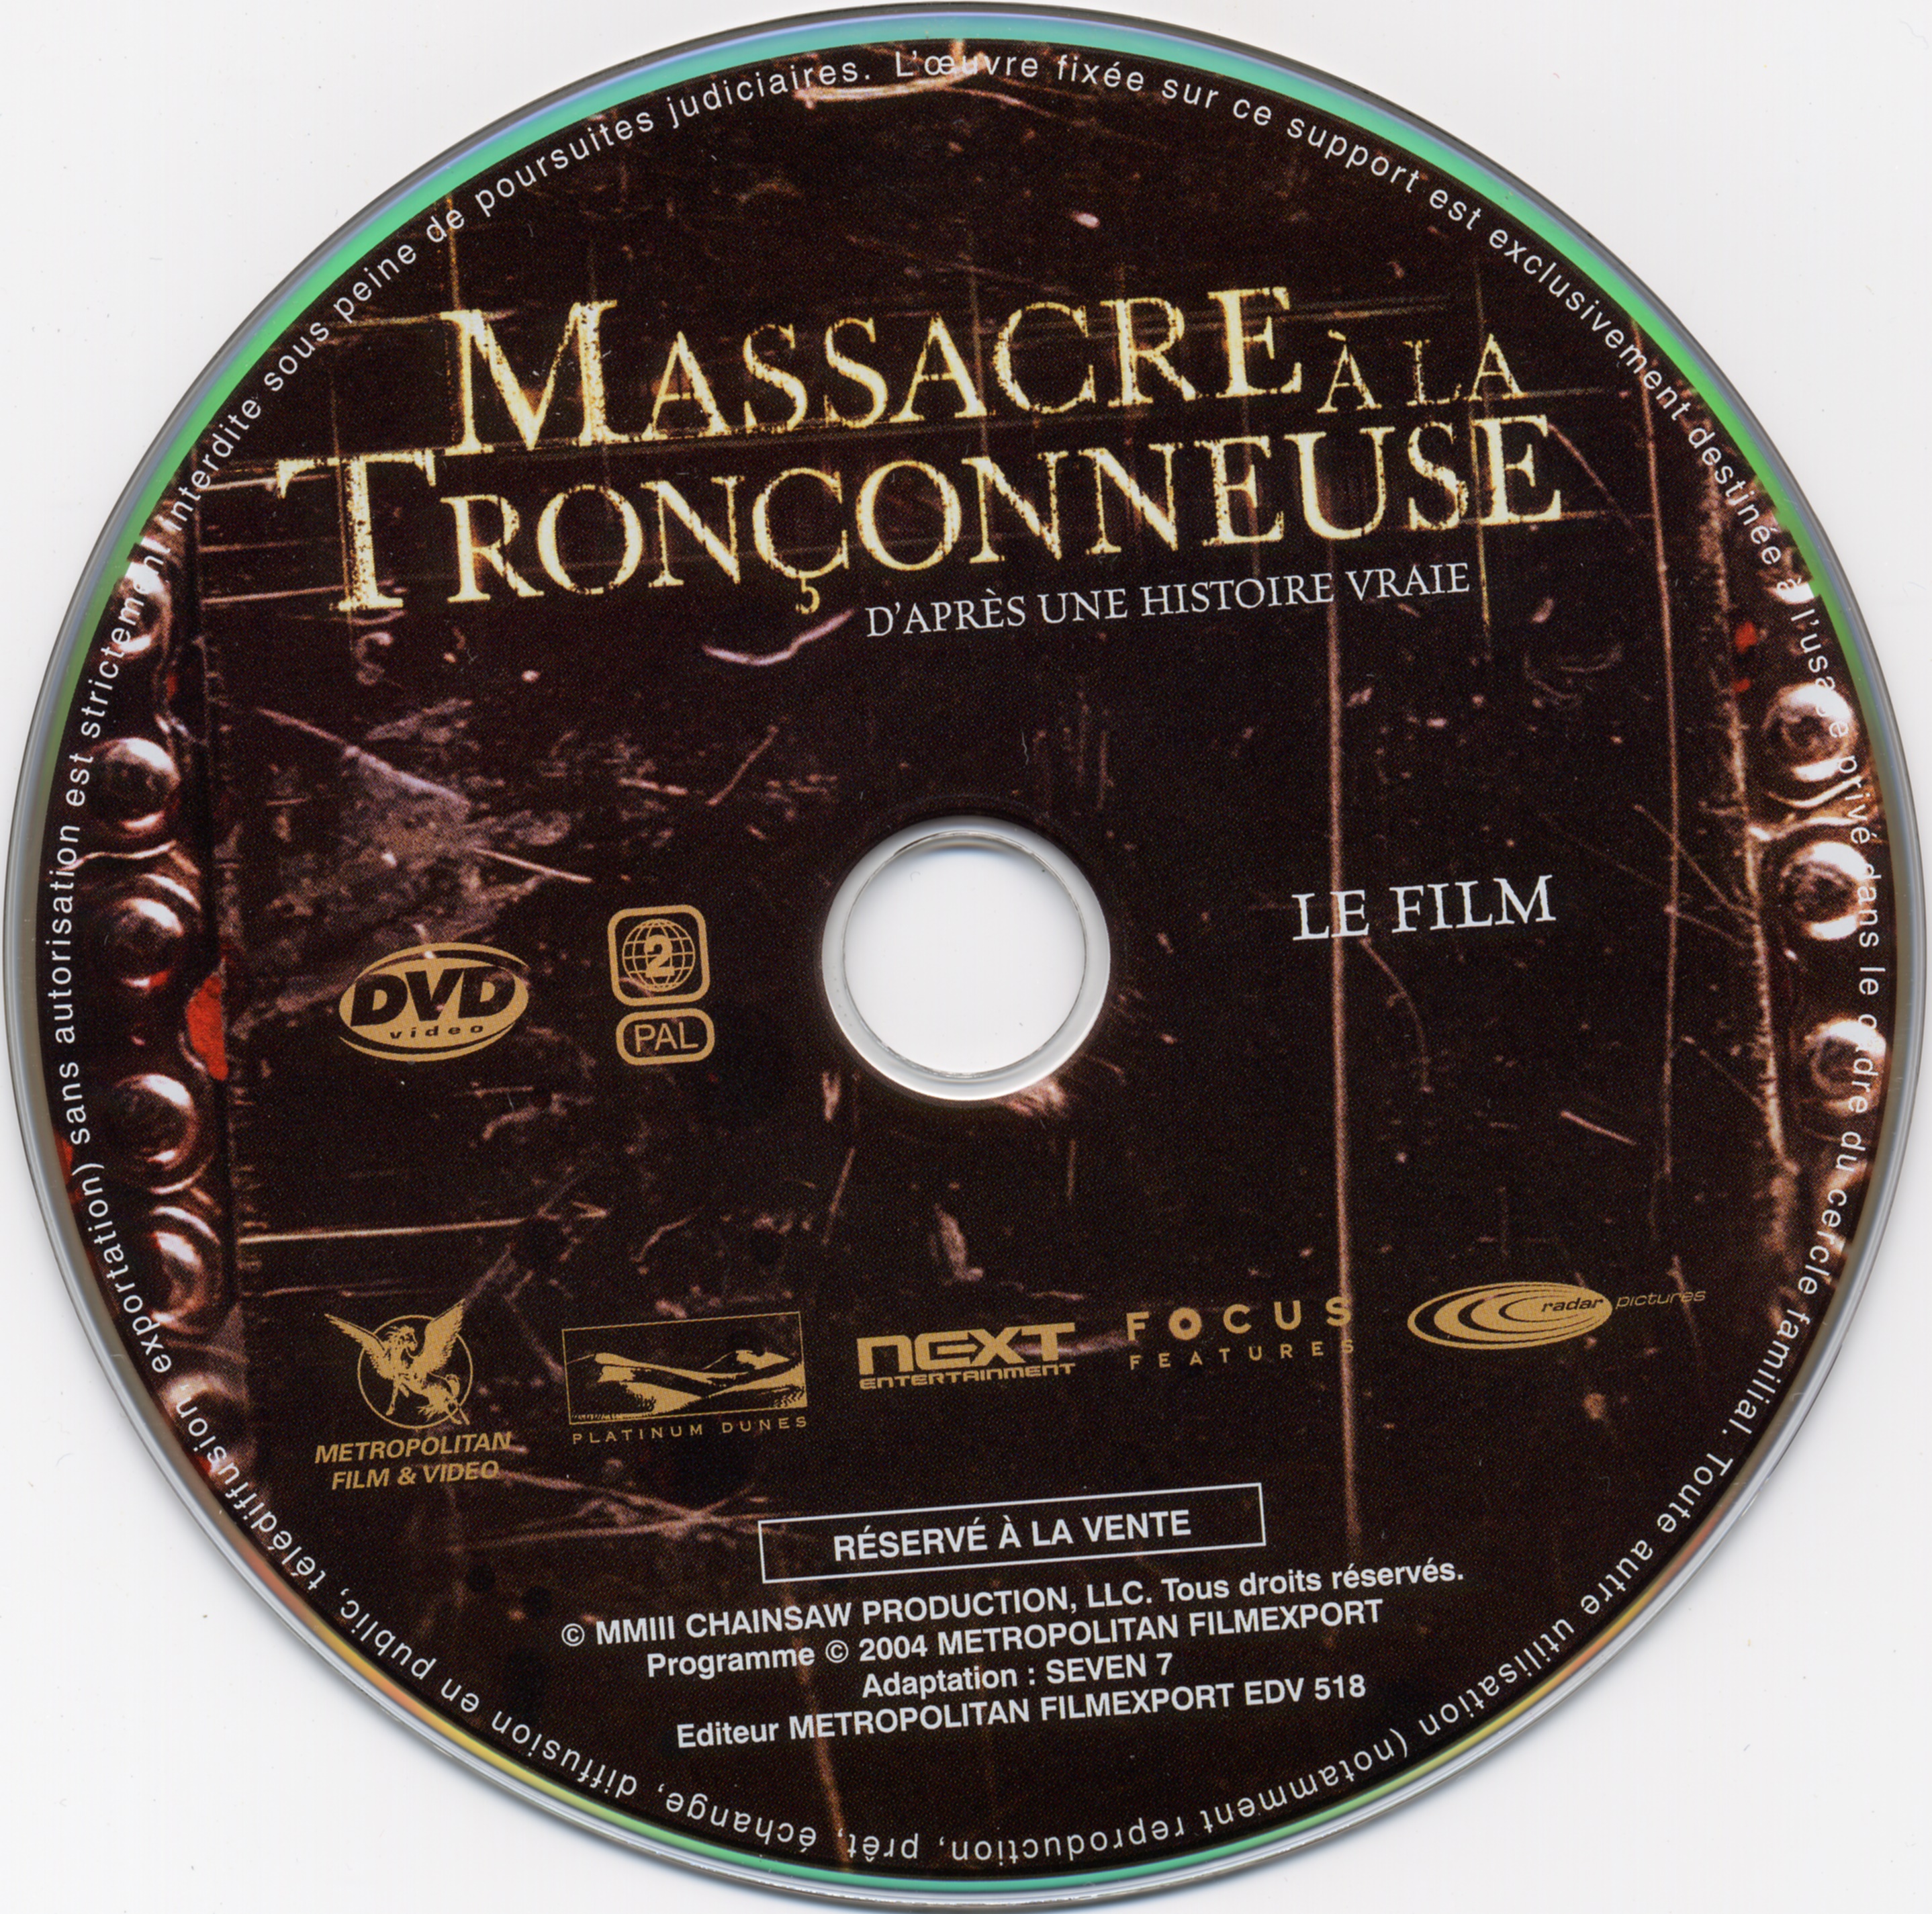 Massacre a la tronconneuse (2003) (FILM)